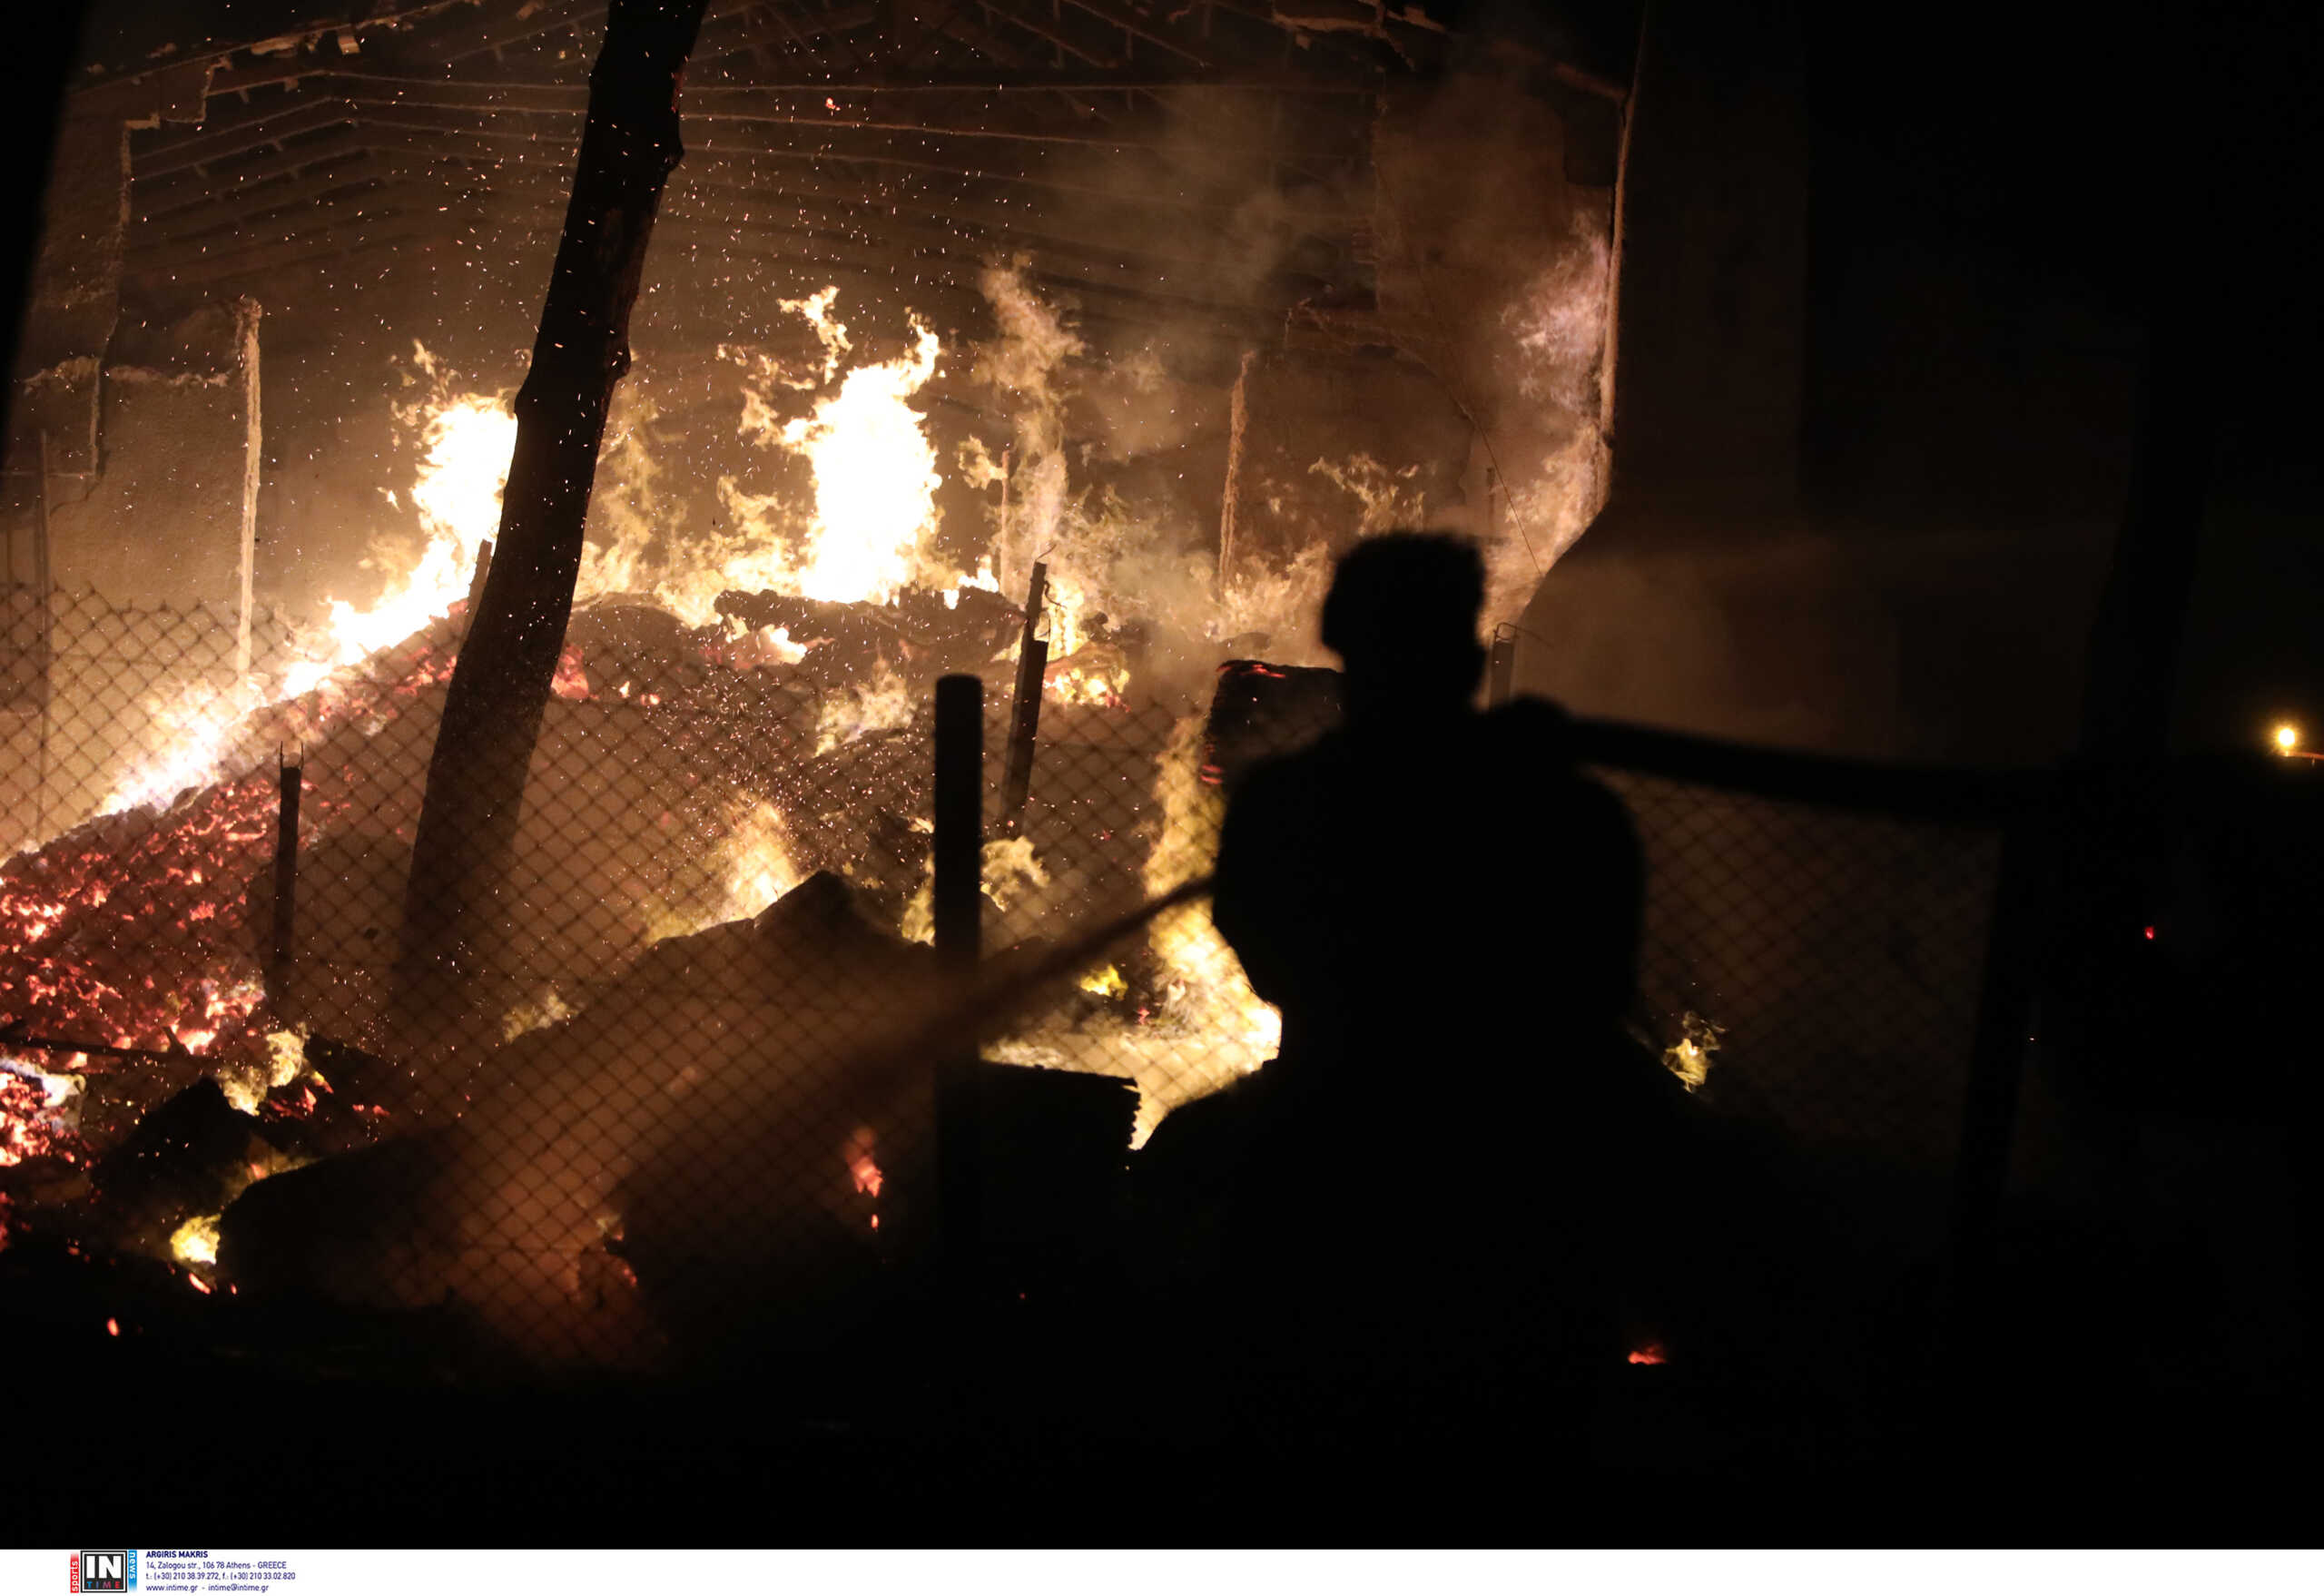 Φωτιά σε Μάνδρα, Μέγαρα, Ρόδο, Λουτράκι και Λακωνία: Μάχη με τις αναζωπυρώσεις και επιφυλακή για νέες εστίες